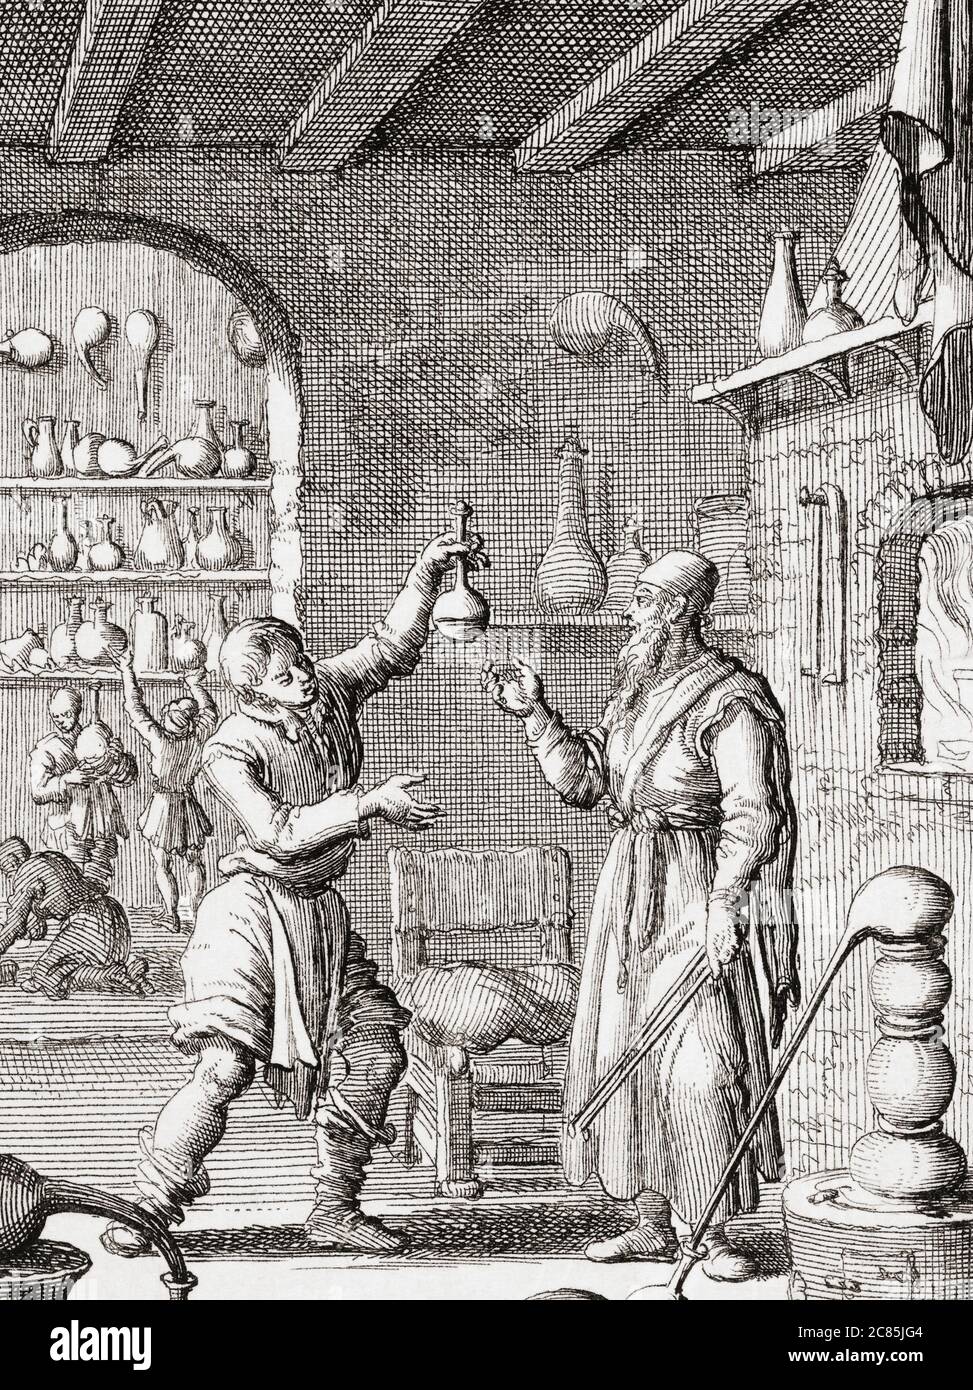 chimistes du xviie siècle au travail dans leur laboratoire. Après une œuvre de l'illustrateur et graveur néerlandais Jan Luyken. Banque D'Images